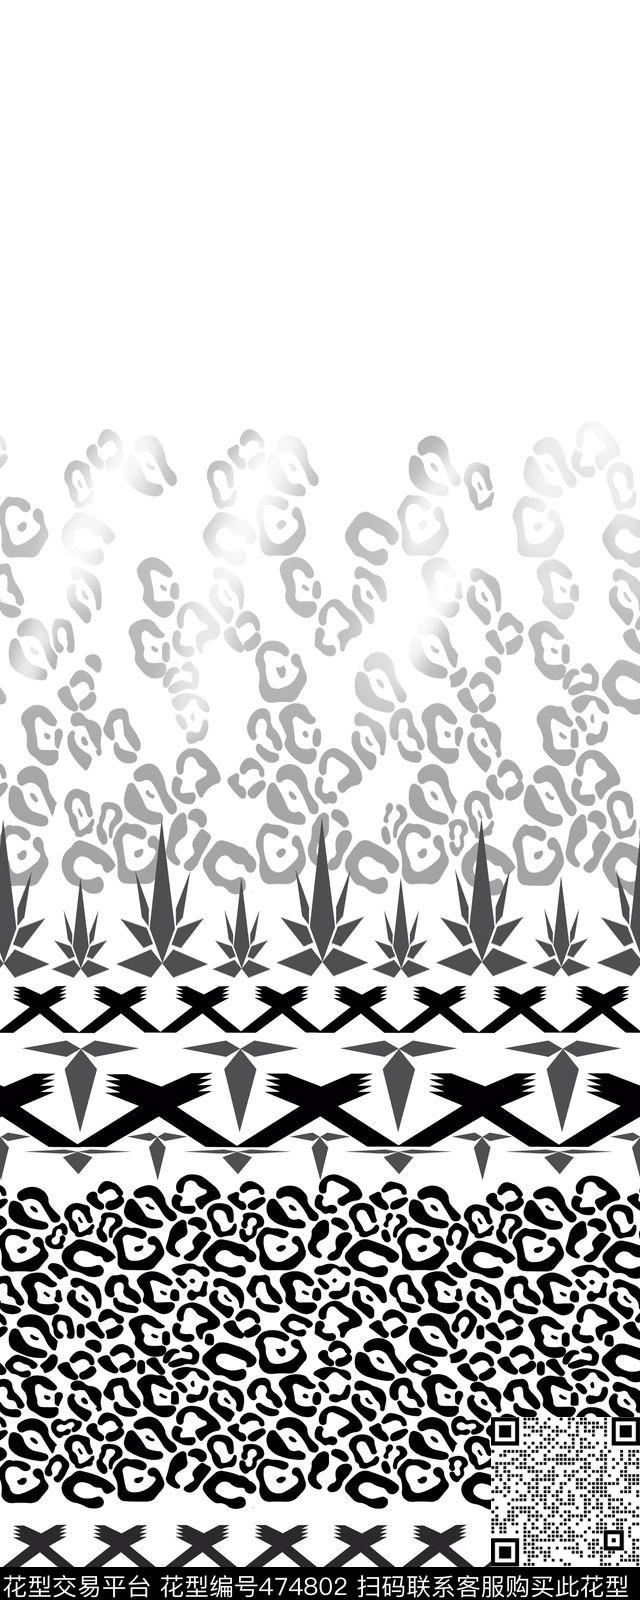 时尚 豹纹 几何 图案定位 - 474802 - 时尚 豹纹 几何 图案定位 女装 - 传统印花花型 － 女装花型设计 － 瓦栏